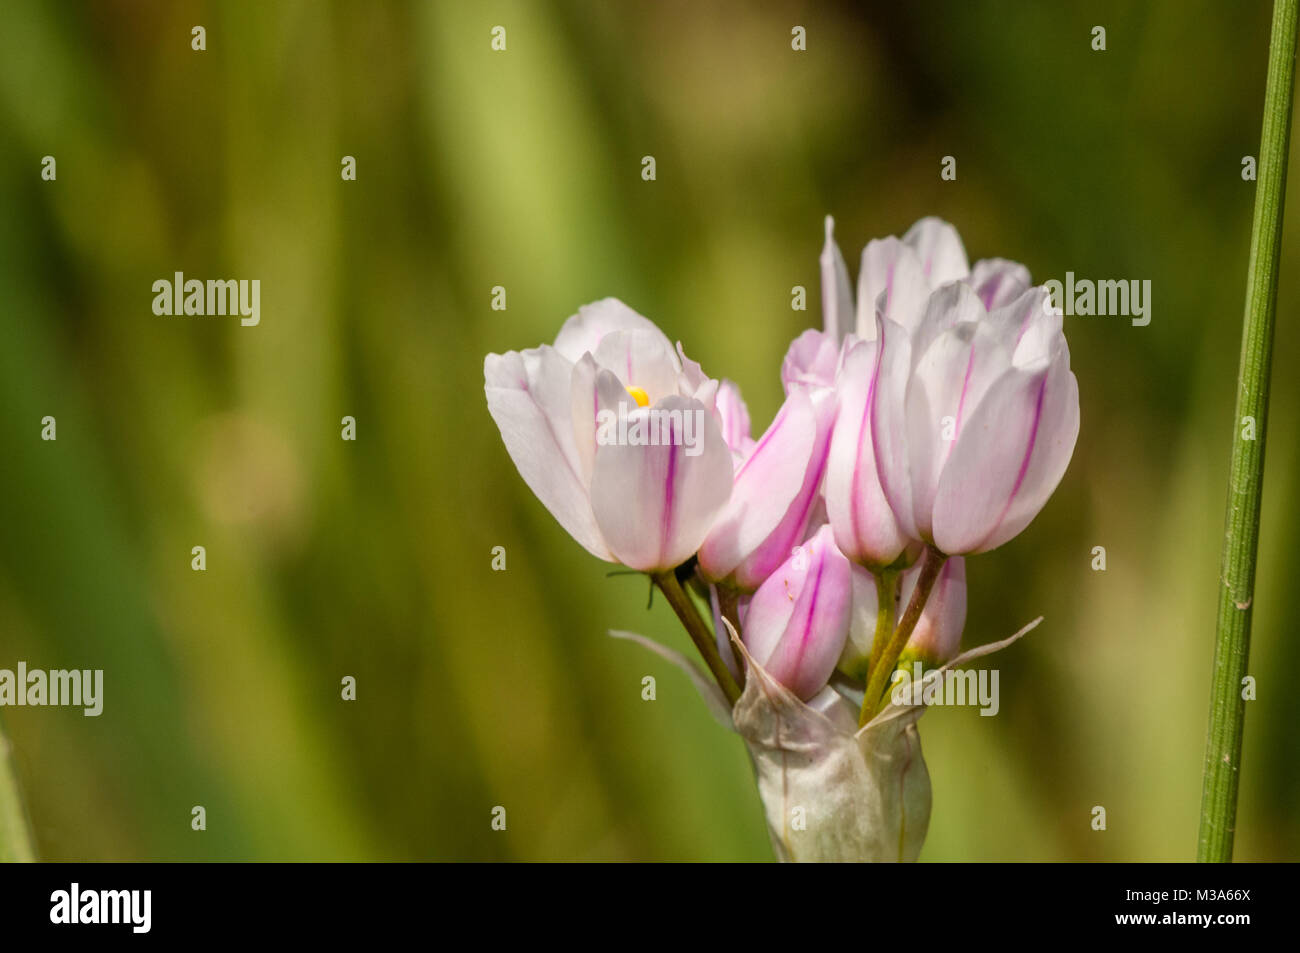 rosy garlic, Allium roseum Stock Photo